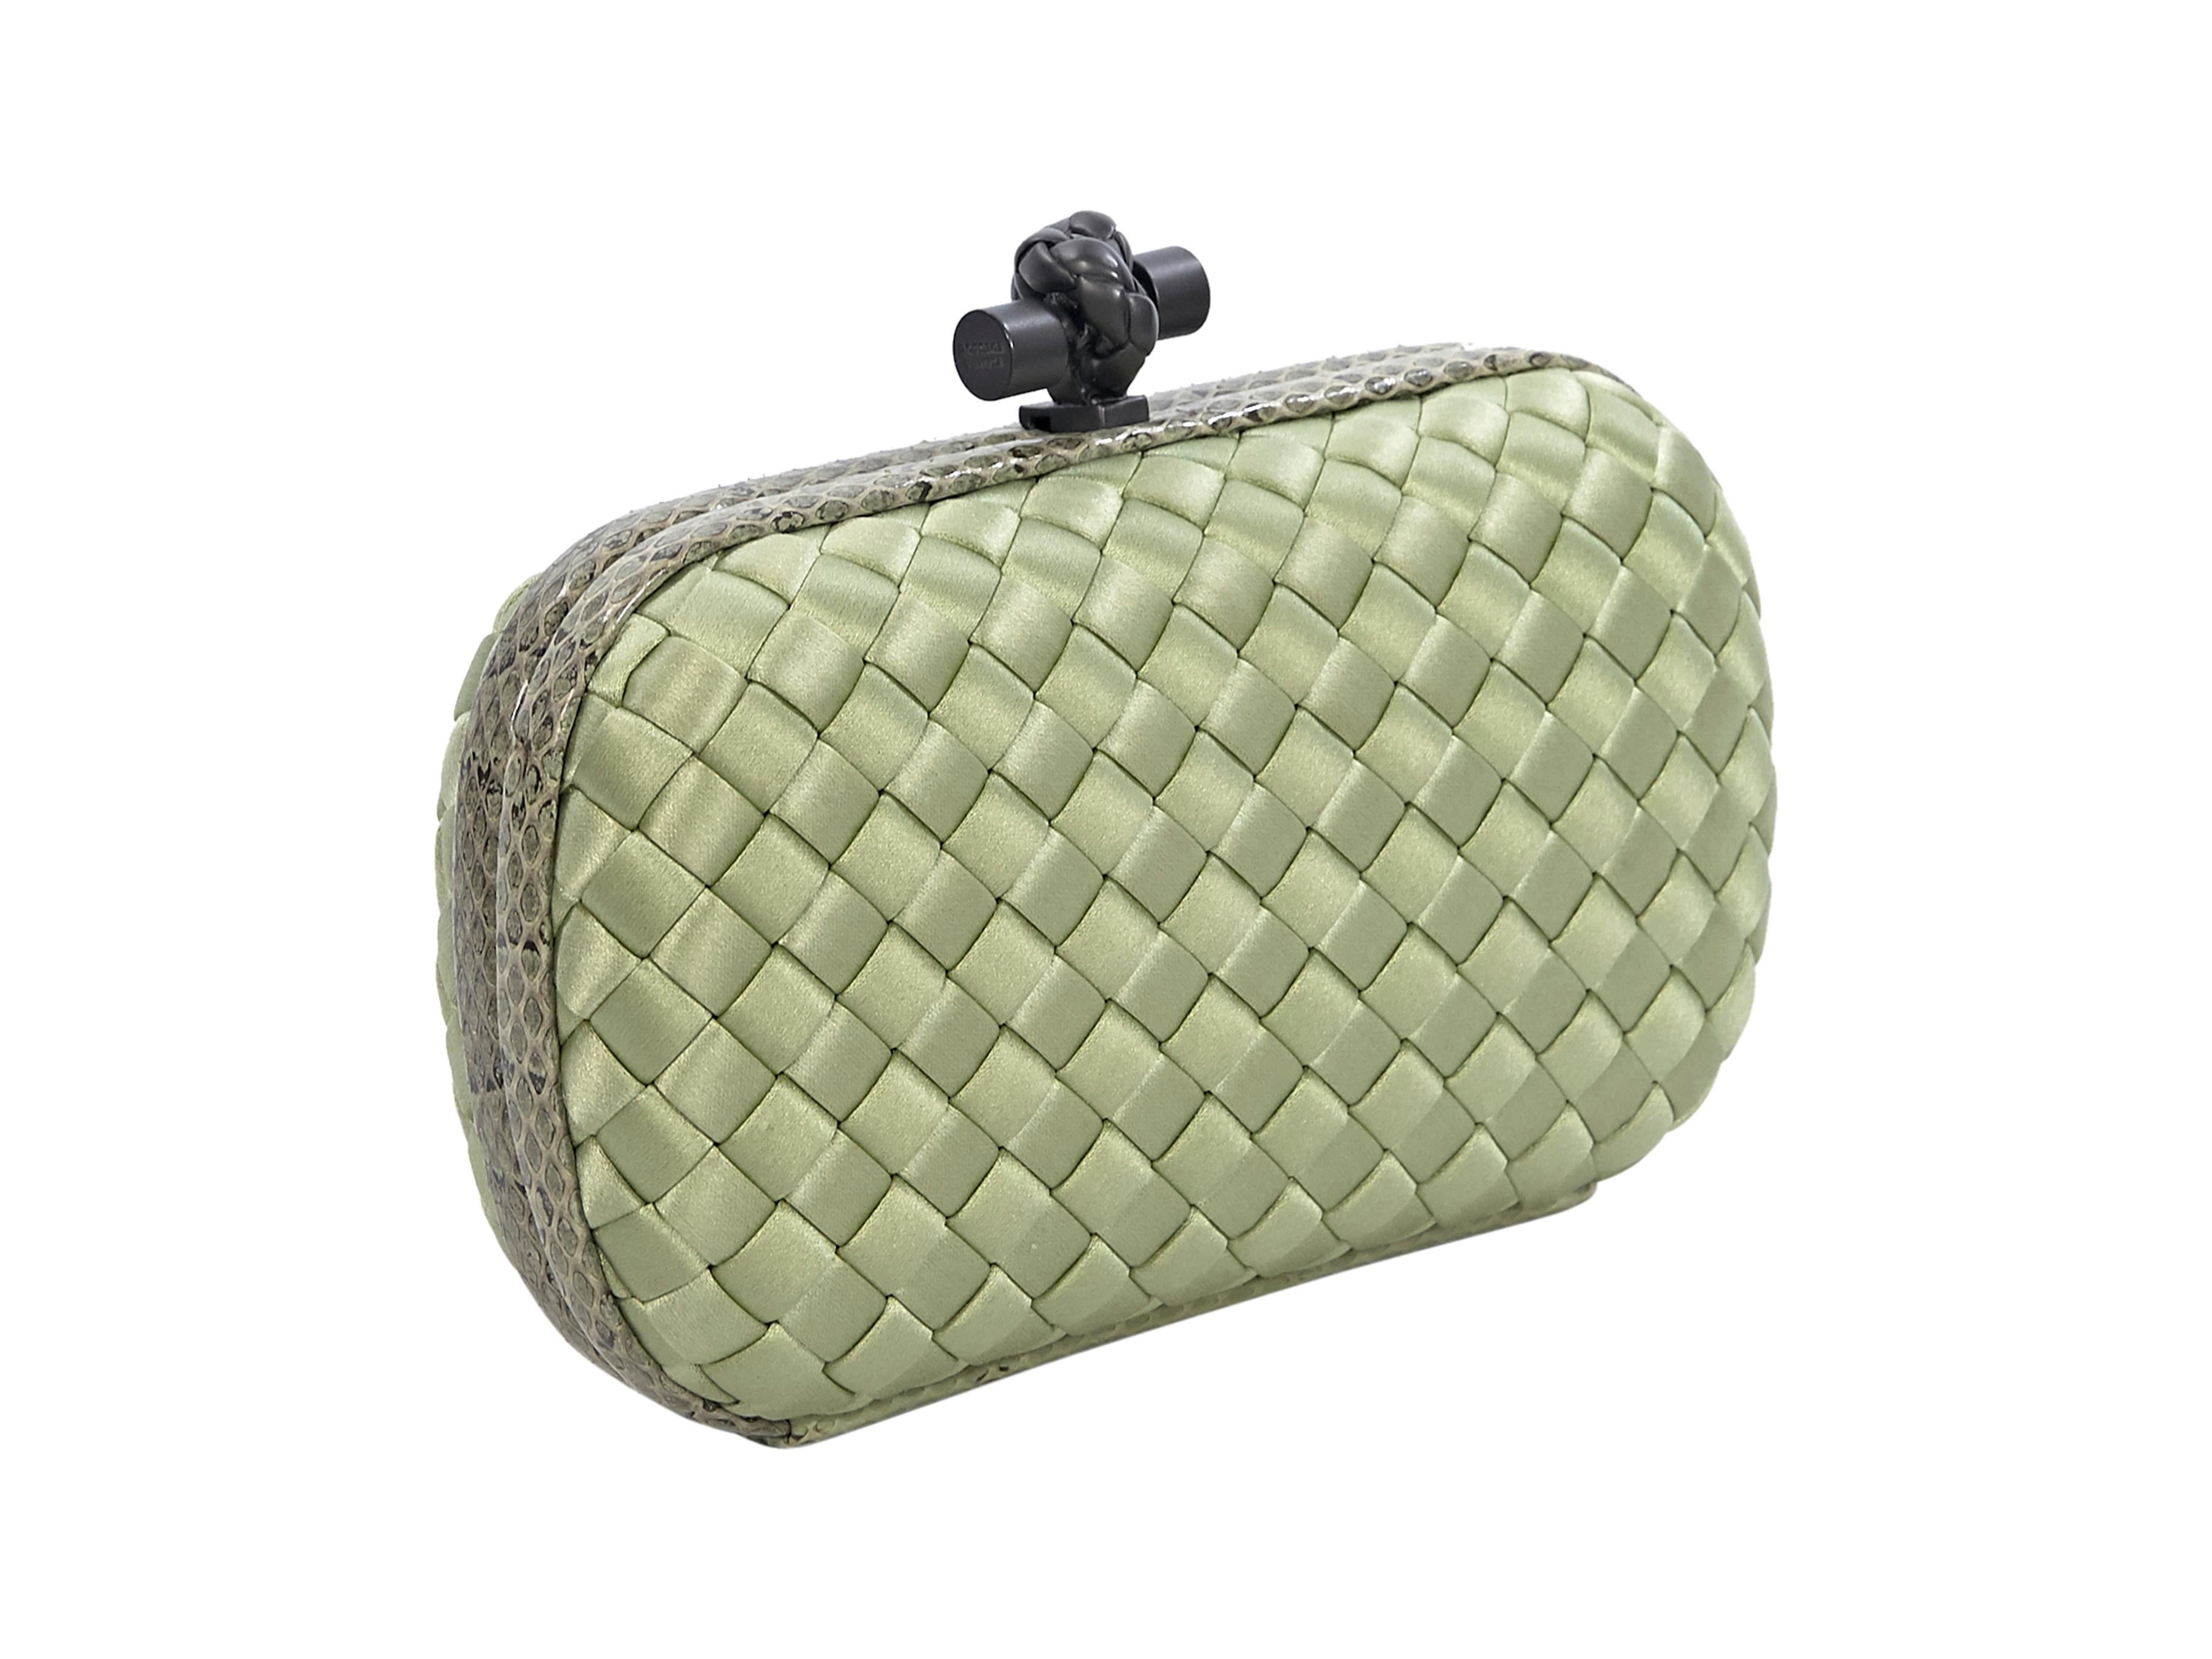 green clutch purse